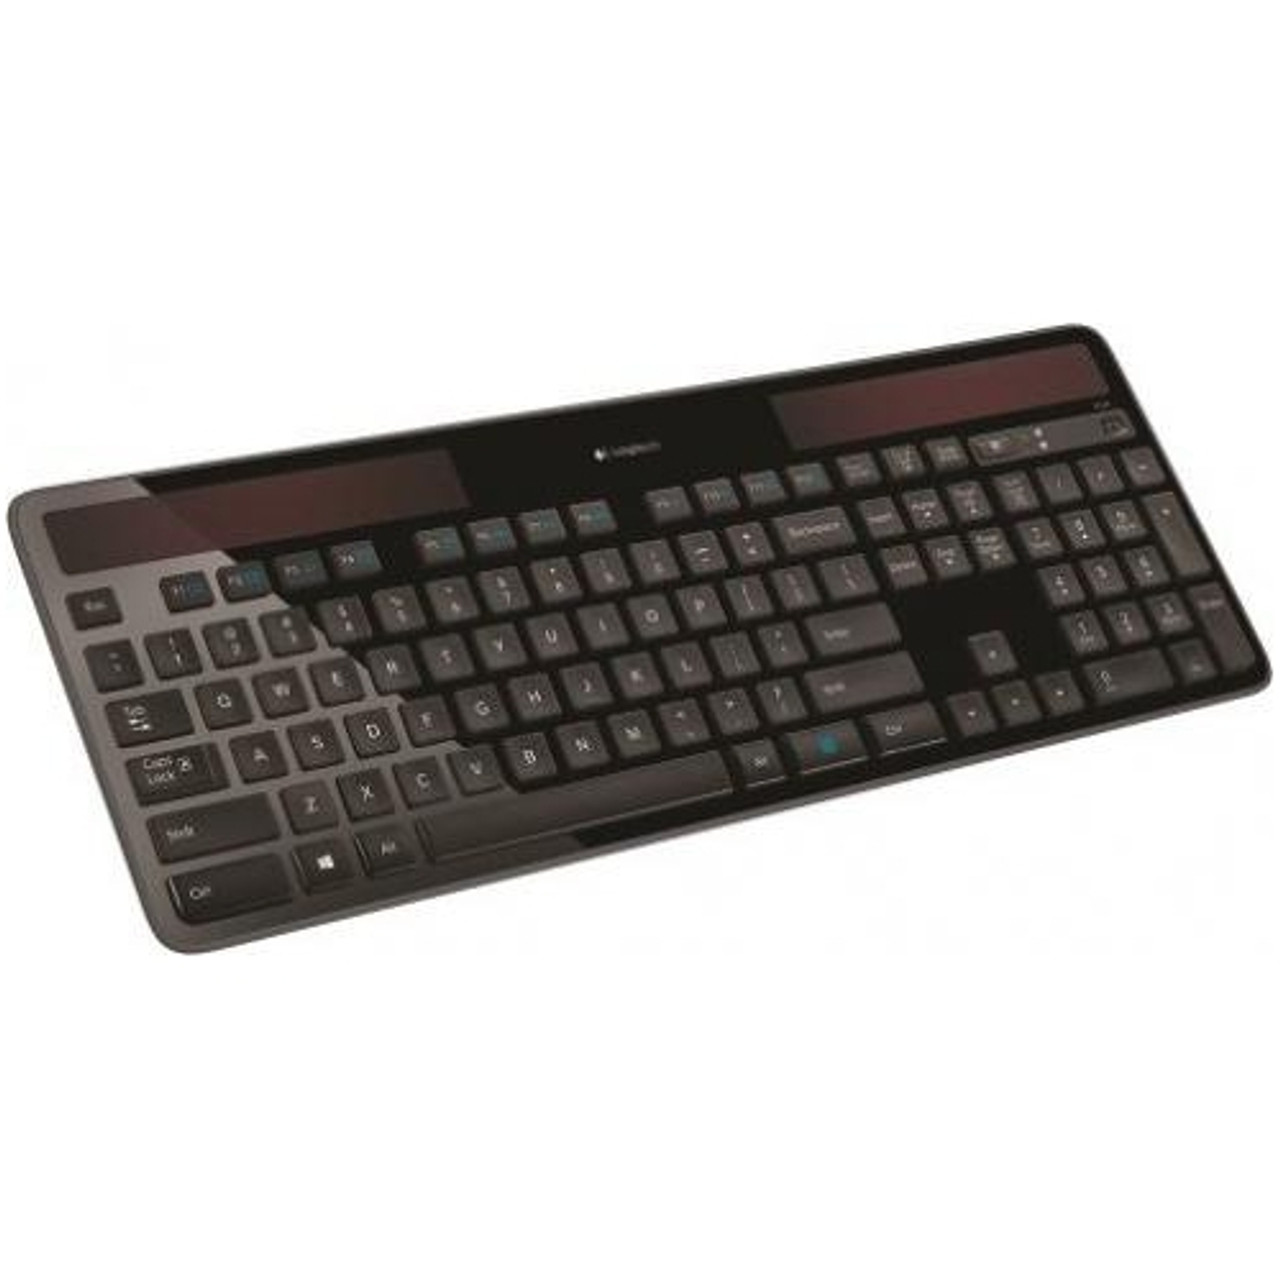 Tablet blanding beskydning Logitech K750 Wireless Solar Keyboard for Windows